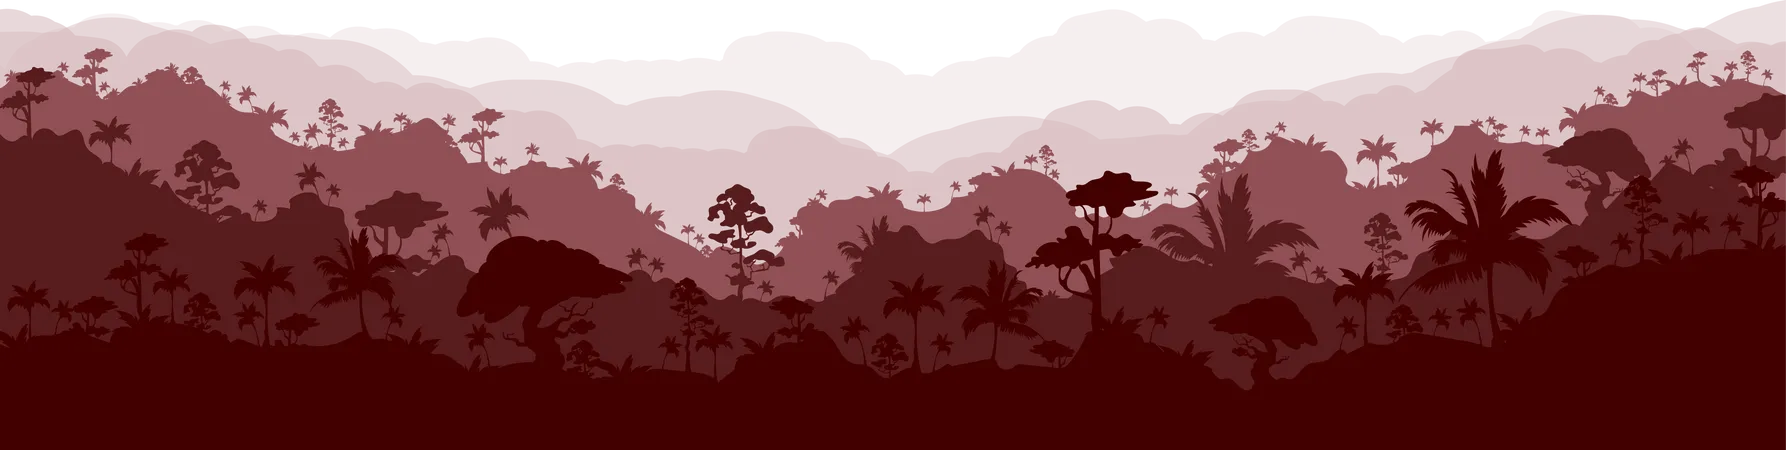 Ilustracion De Vector De Color Plano De Selva Paisaje De Bosque Marron Bosques Panoramicos Grises Naturaleza Escenica Tropical Ambiente De Clima Humedo Paisaje De Dibujos Animados 2 D De Selva Tropical Con Capas En El Fondo Ilustración